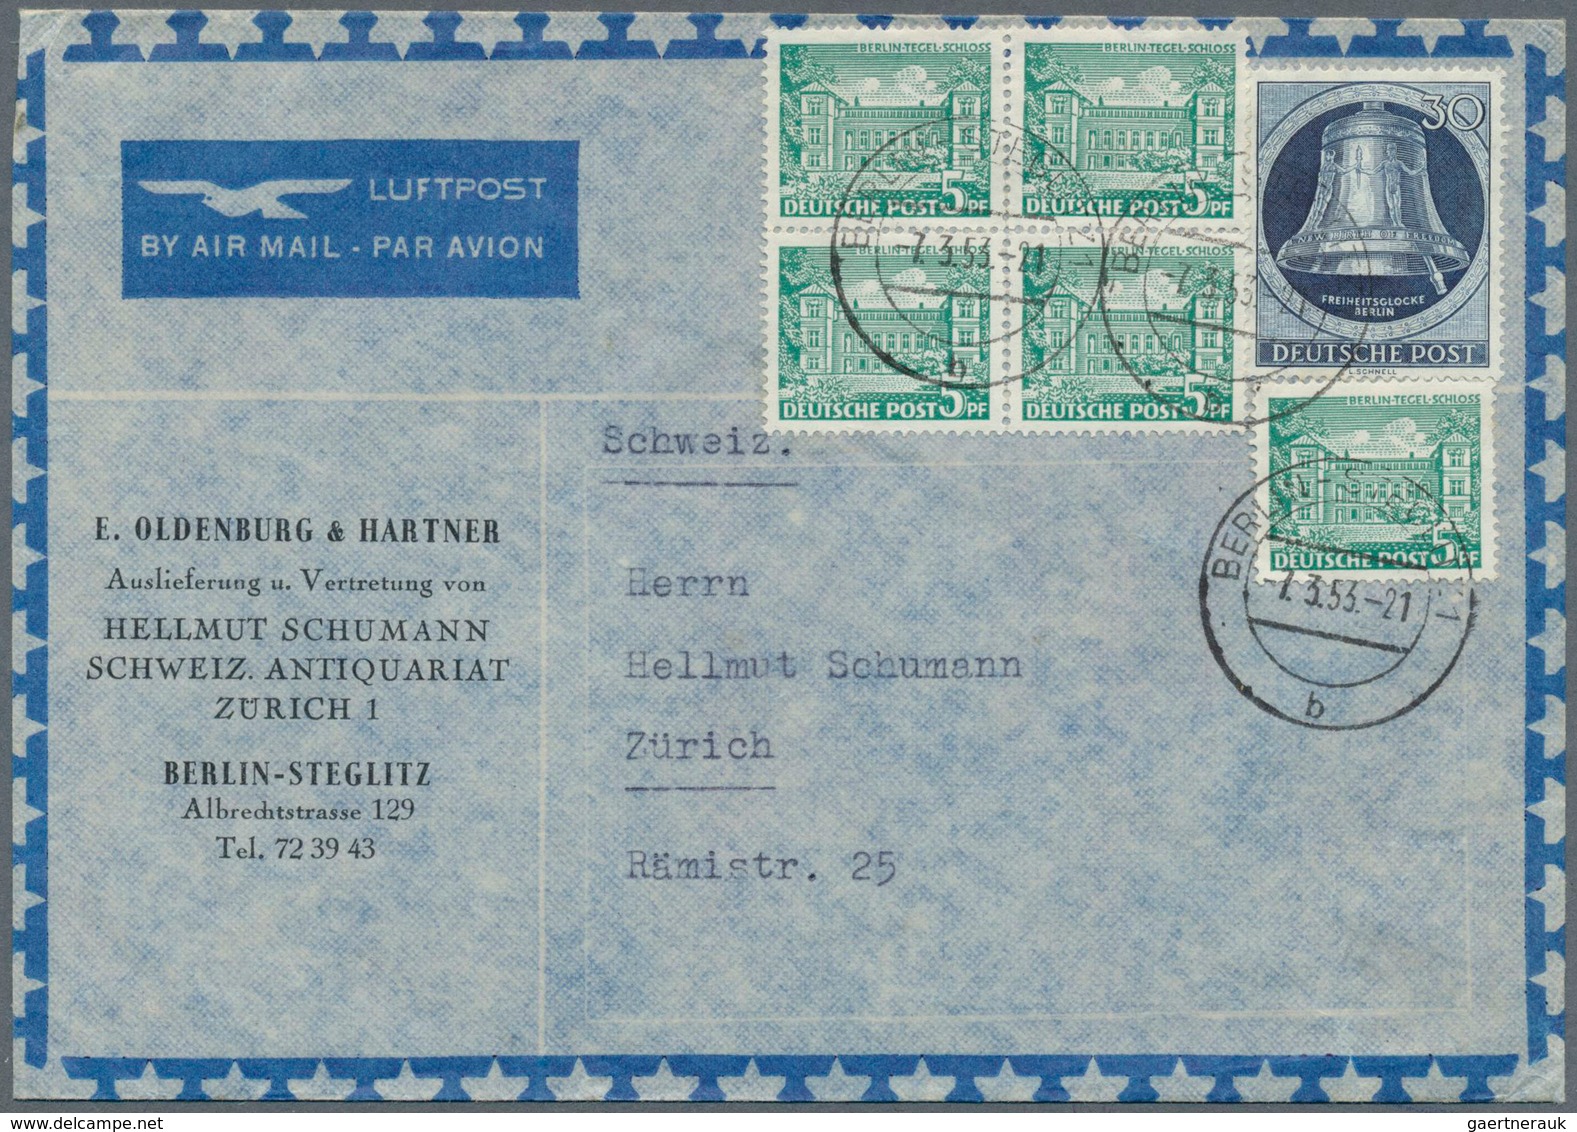 29945 Deutschland: 1833/1989, vielseitige Partie von ca. 140 Briefen und Karten (ab ein wenig Vorphila), S